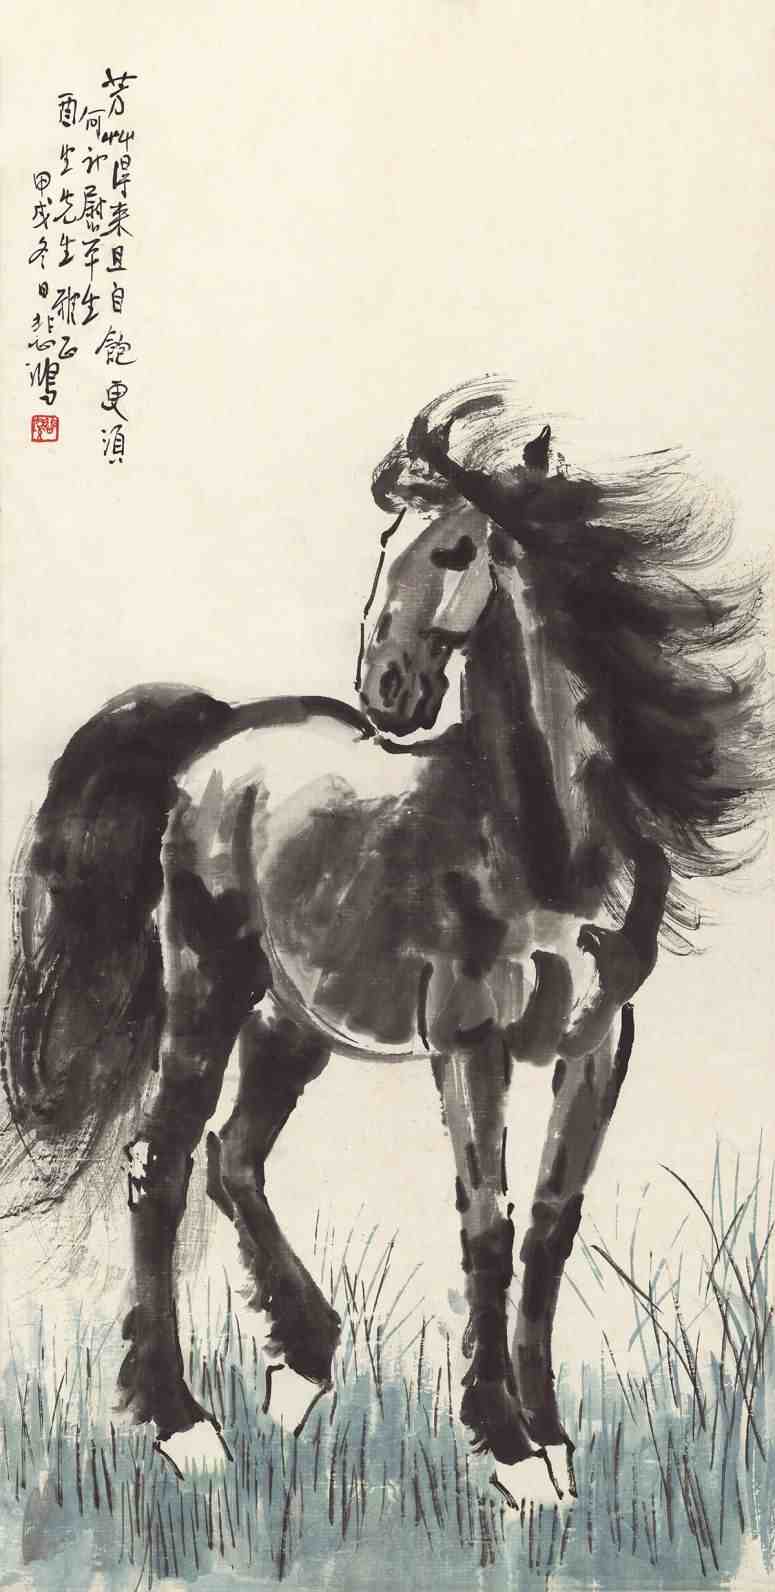 中国现代画家徐悲鸿的马画作品欣赏